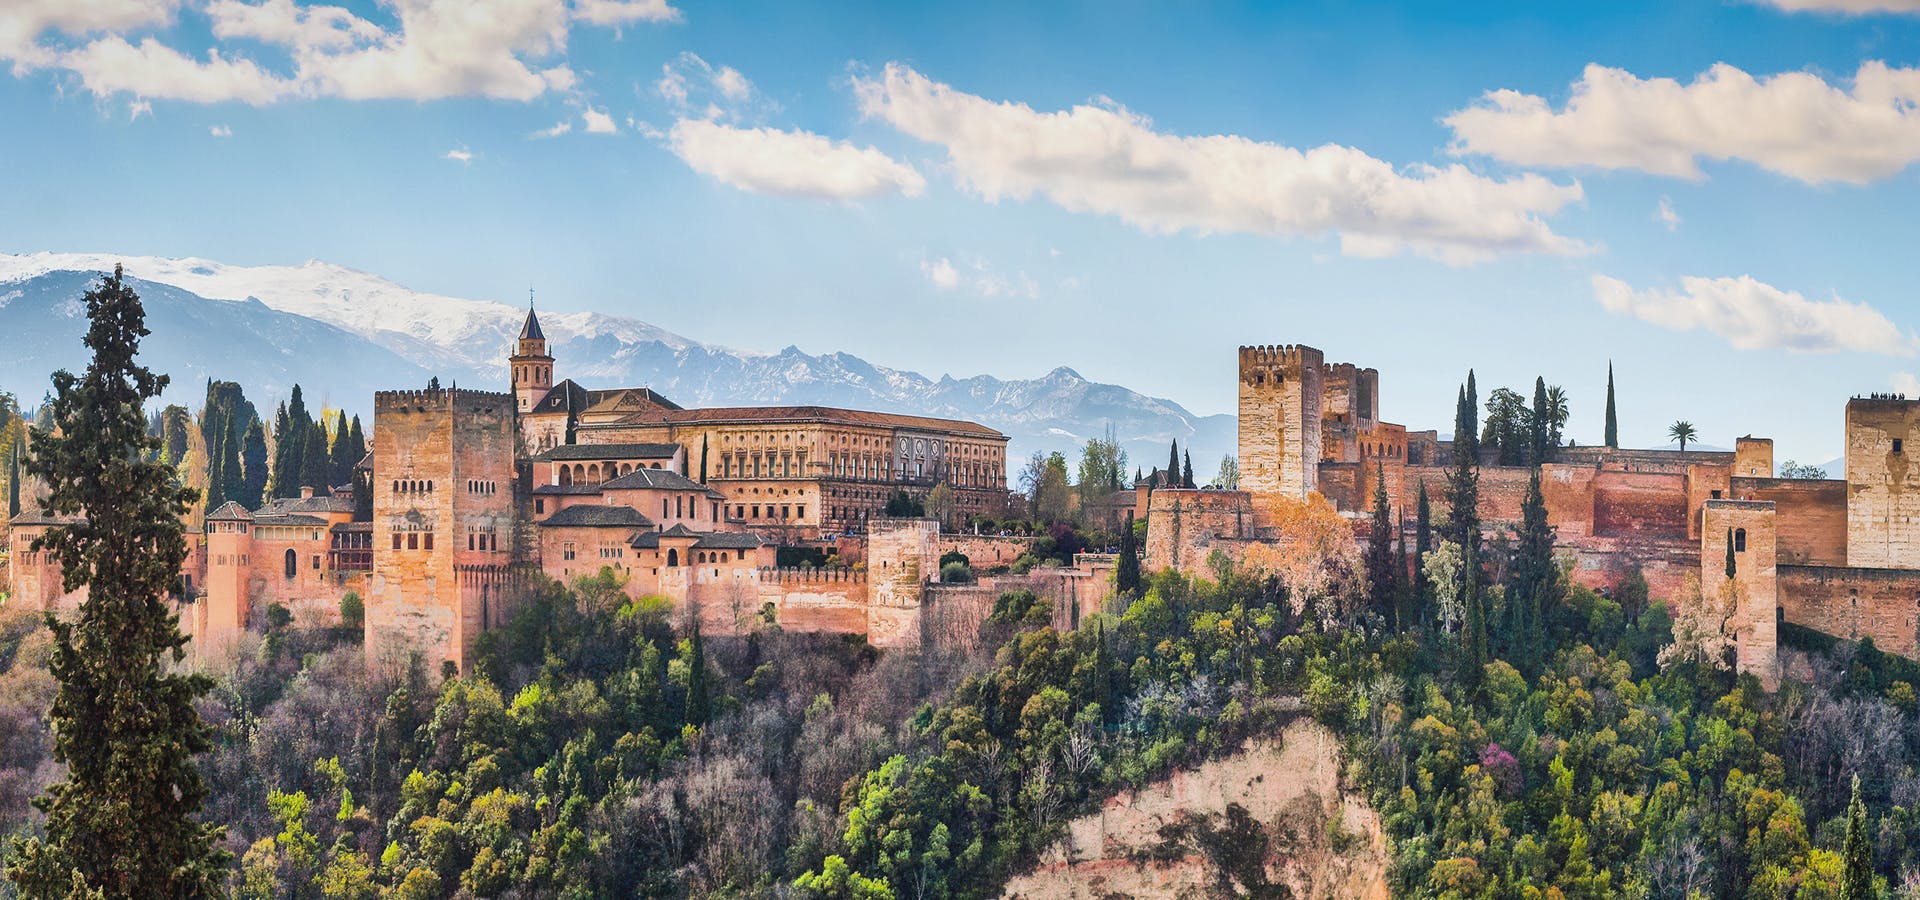 Tur med billetter inkludert til hele Alhambra